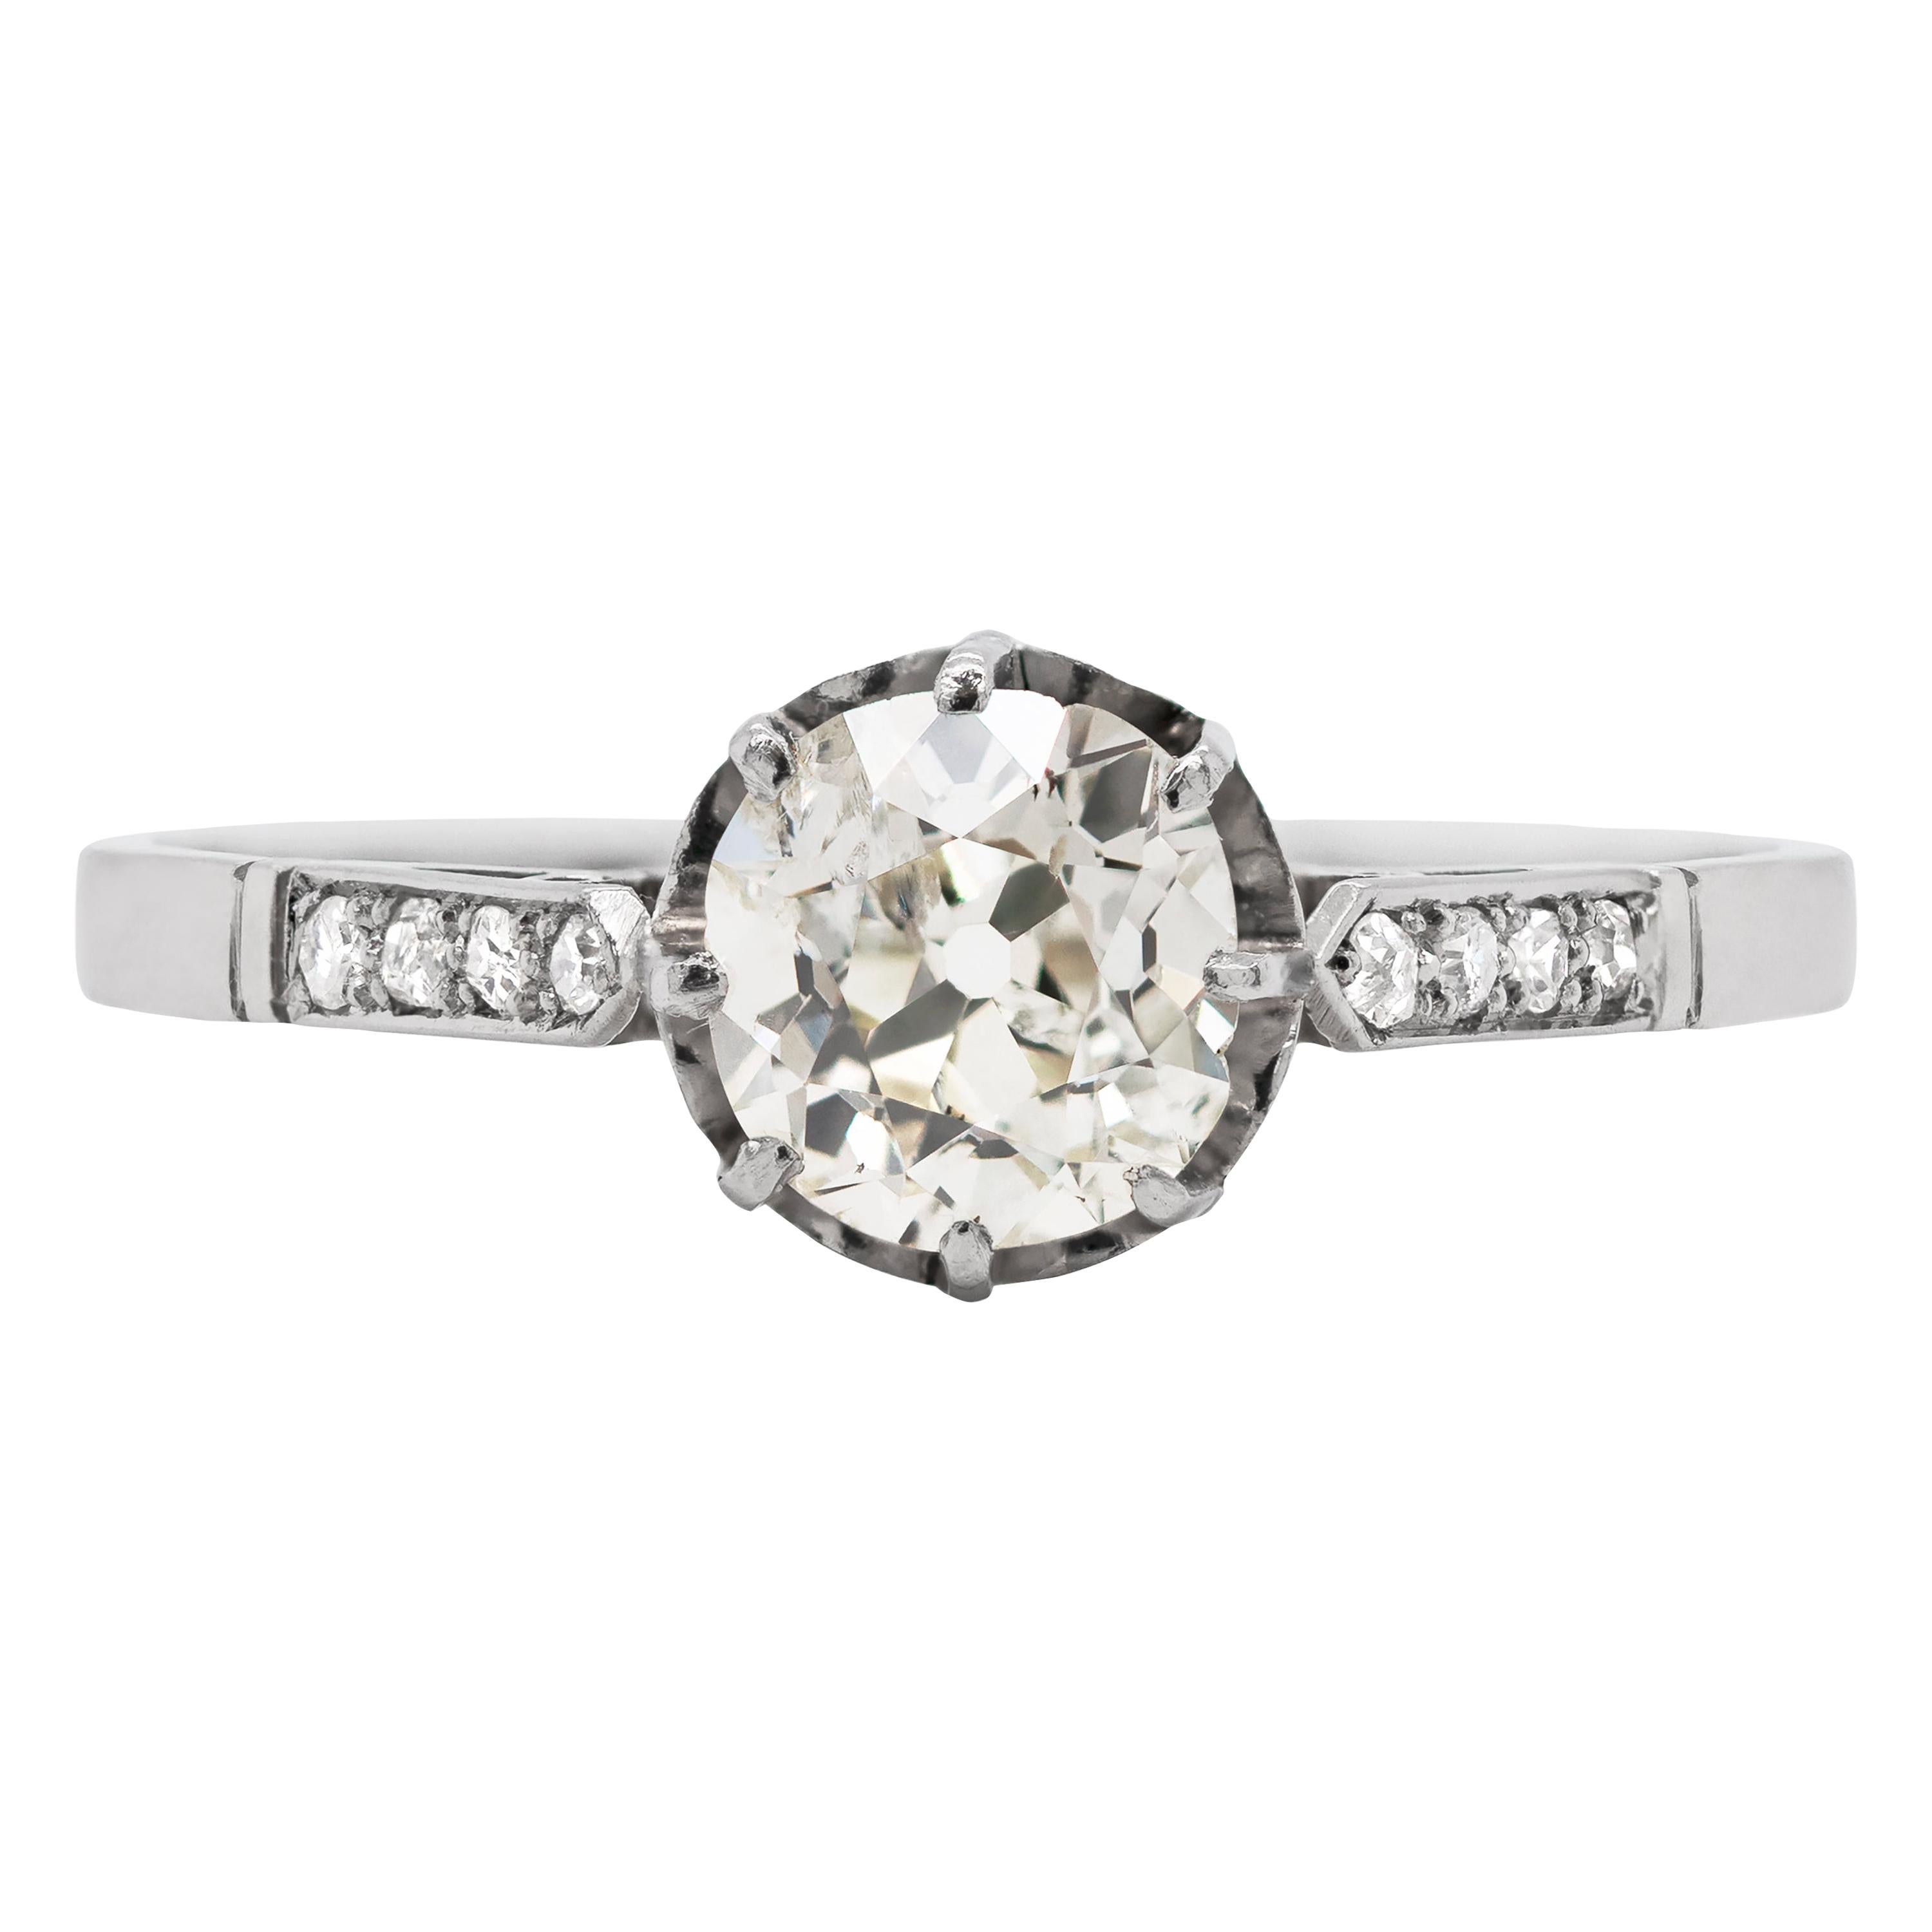 Antique 1.09 Carat Old Cut Diamond Platinum Engagement Ring, circa 1910 For Sale